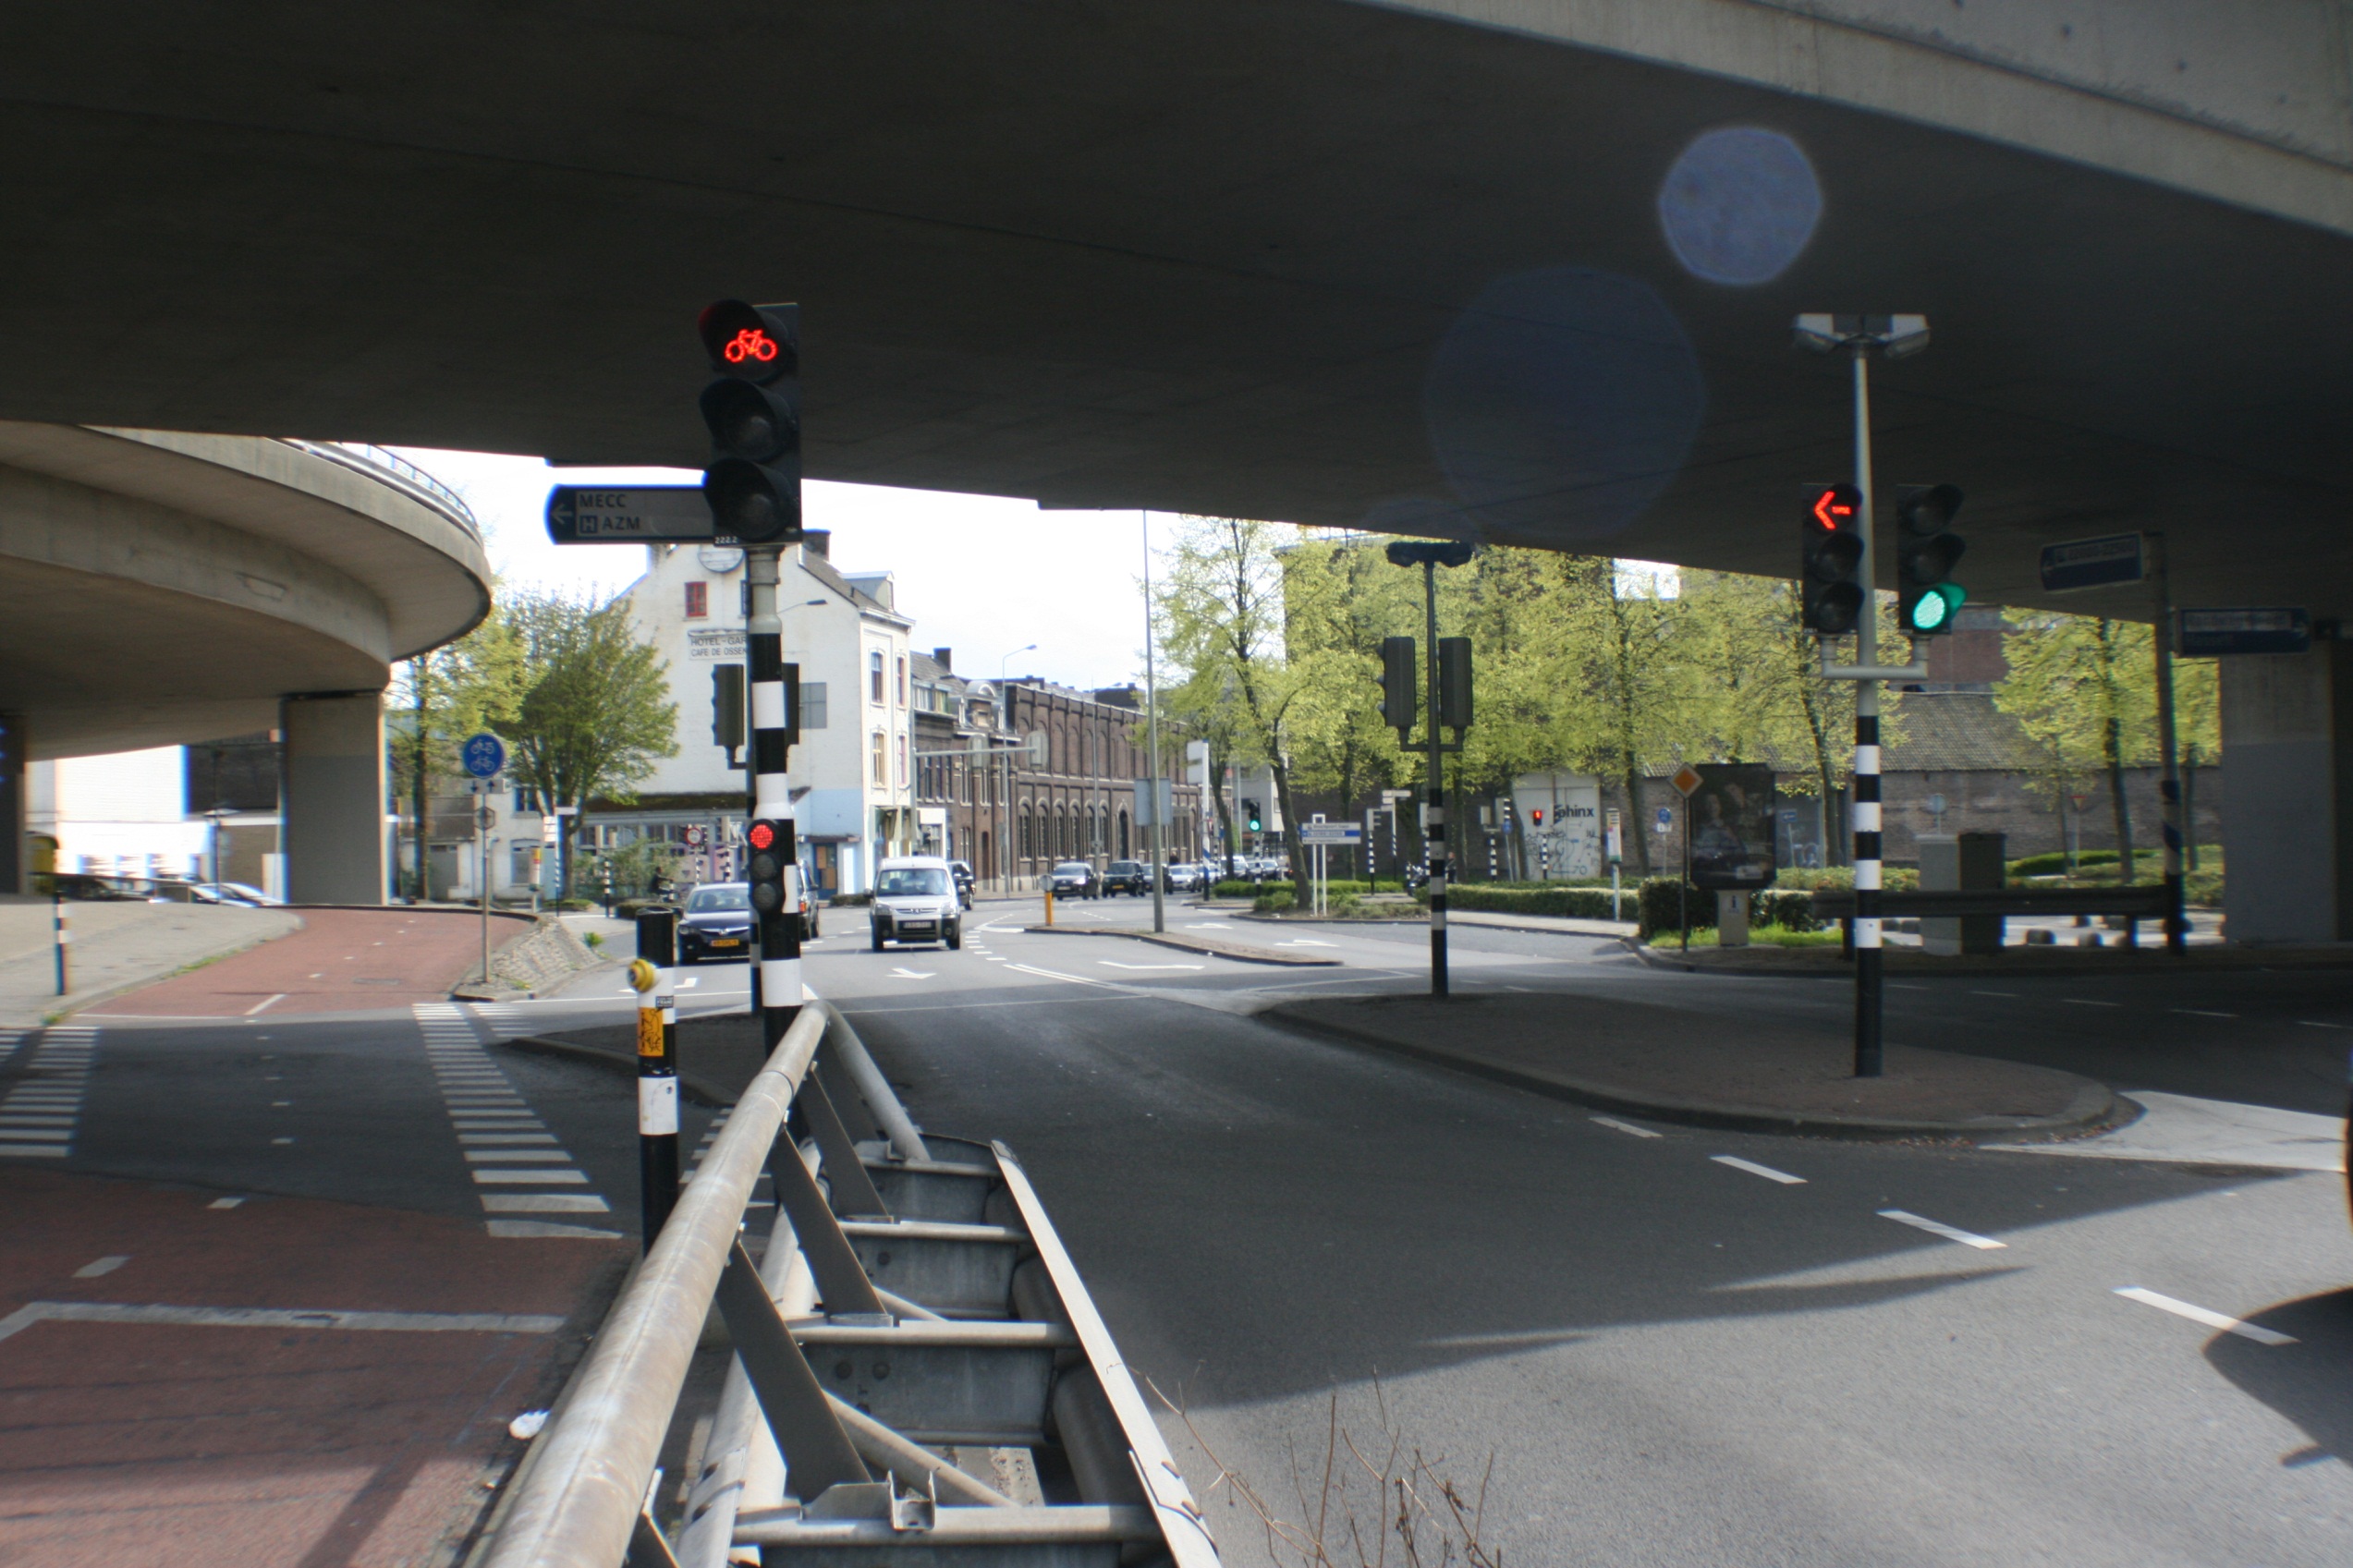 Planstudie Stadstracé Tram Vlaanderen Maastricht Figuur 9. Dwarsprofiel dubbelsporige variant tracédeel 1 TVM ter hoogte van Bosscherweg (km 0.